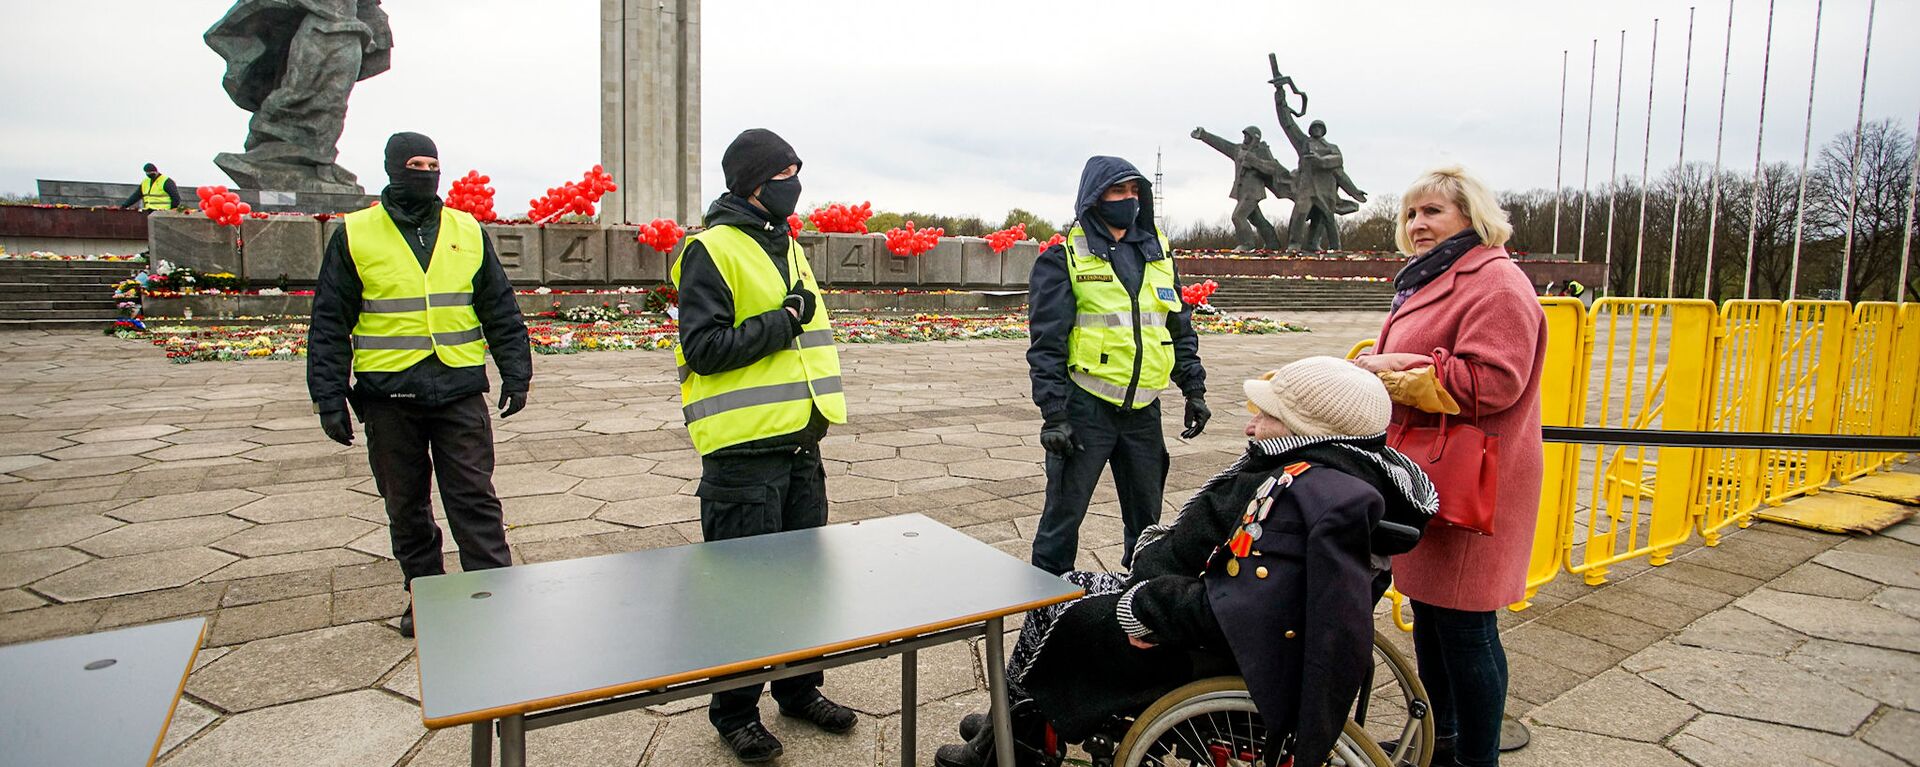 Ветеран хотела лично возложить цветы к подножию памятника Освободителям - Sputnik Латвия, 1920, 09.05.2021